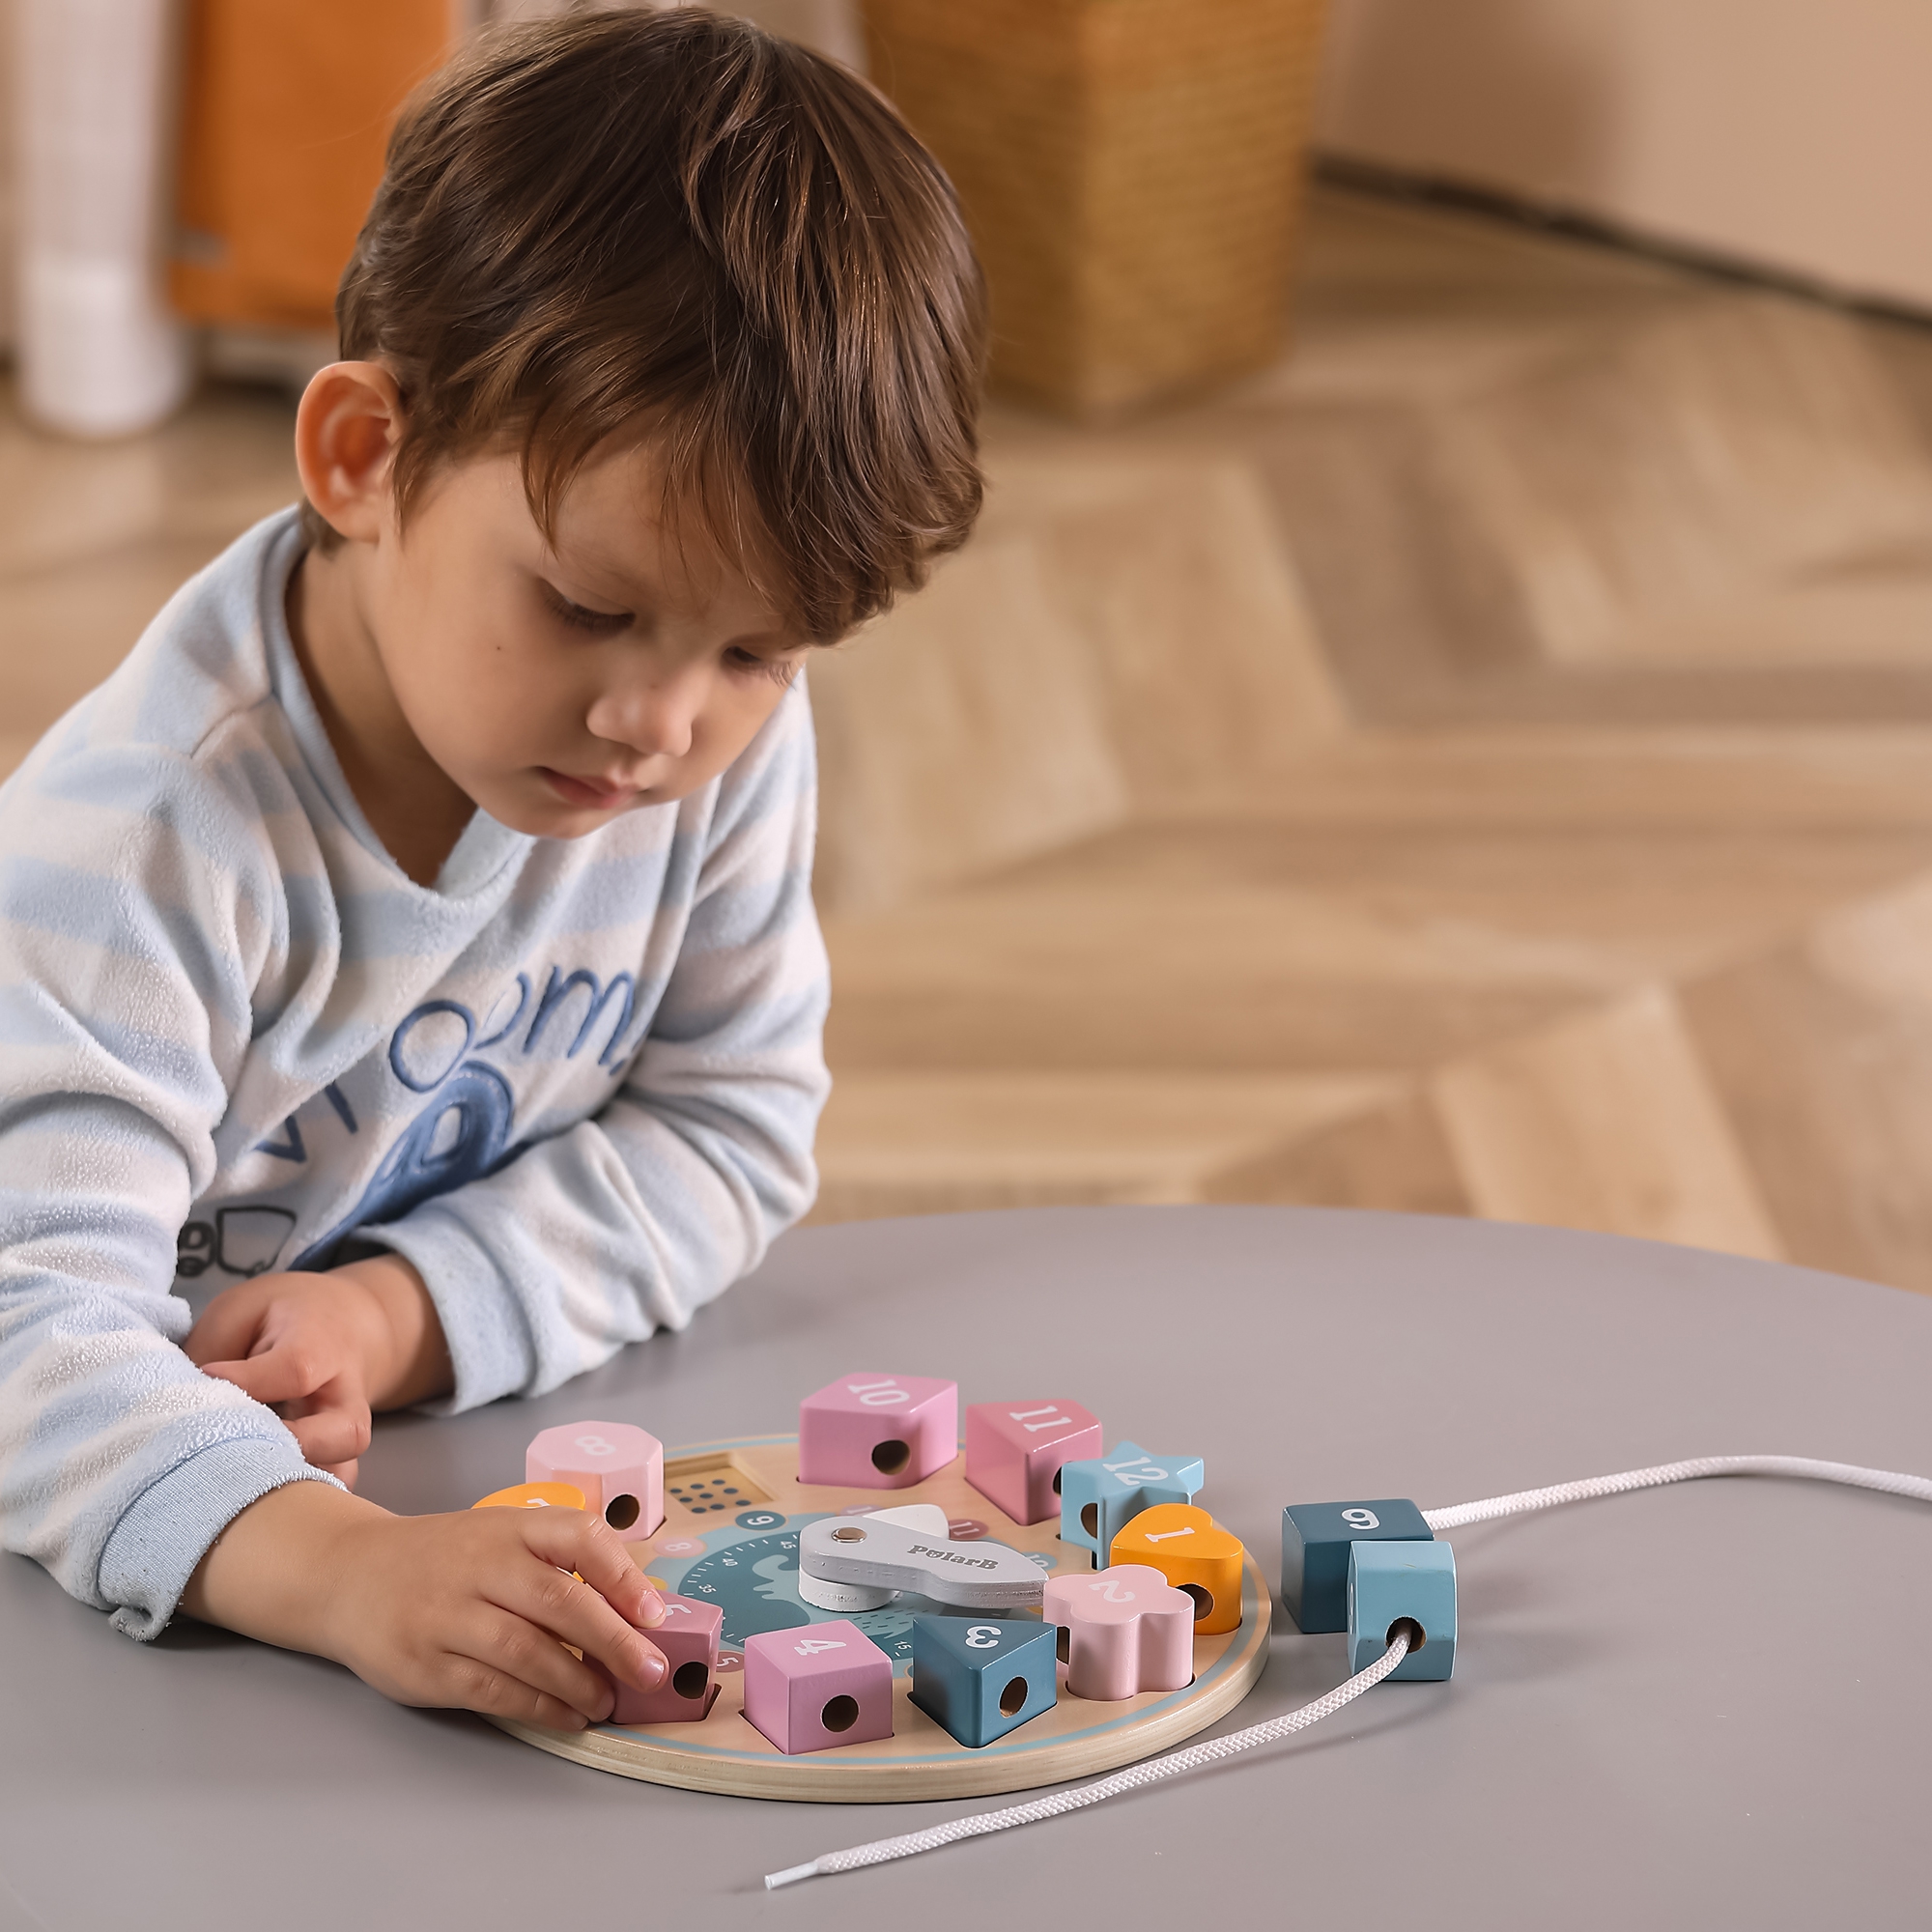 Sorter kształtów zegar nawlekanka Montessori, zabawka dla dzieci, Viga PolarB